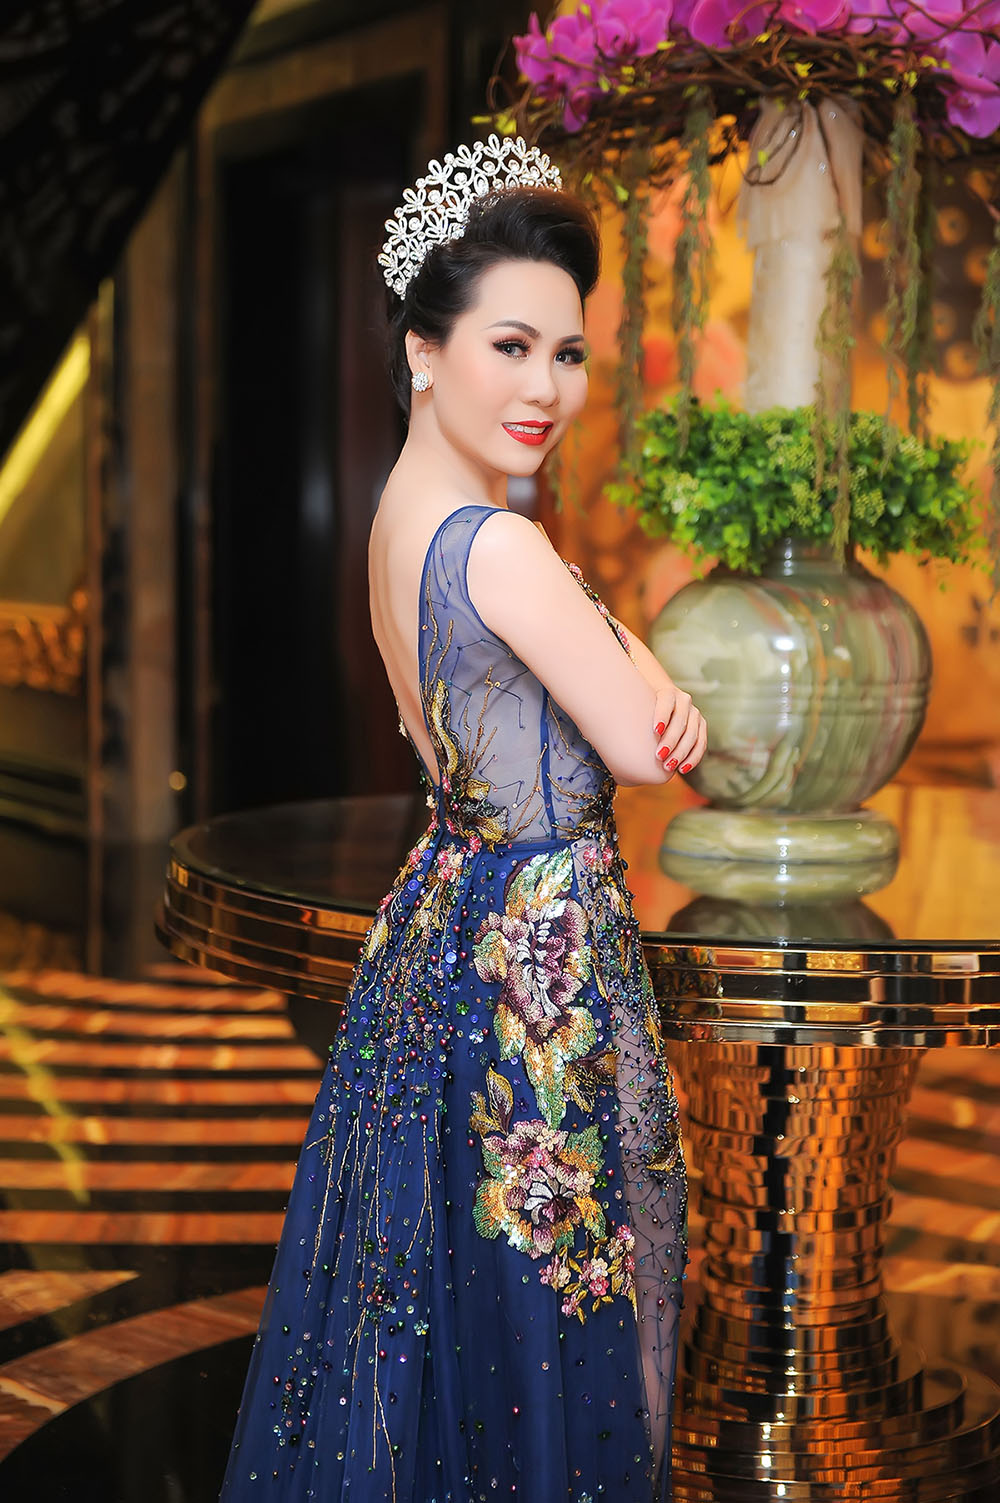 Nữ hoàng doanh nhân Kim Chi trở nên mạnh mẽ, quyền lực và kiêu sa trong chiếc váy xanh mong manh, đẹp ngọt ngào quyến rũ huyền bí. 